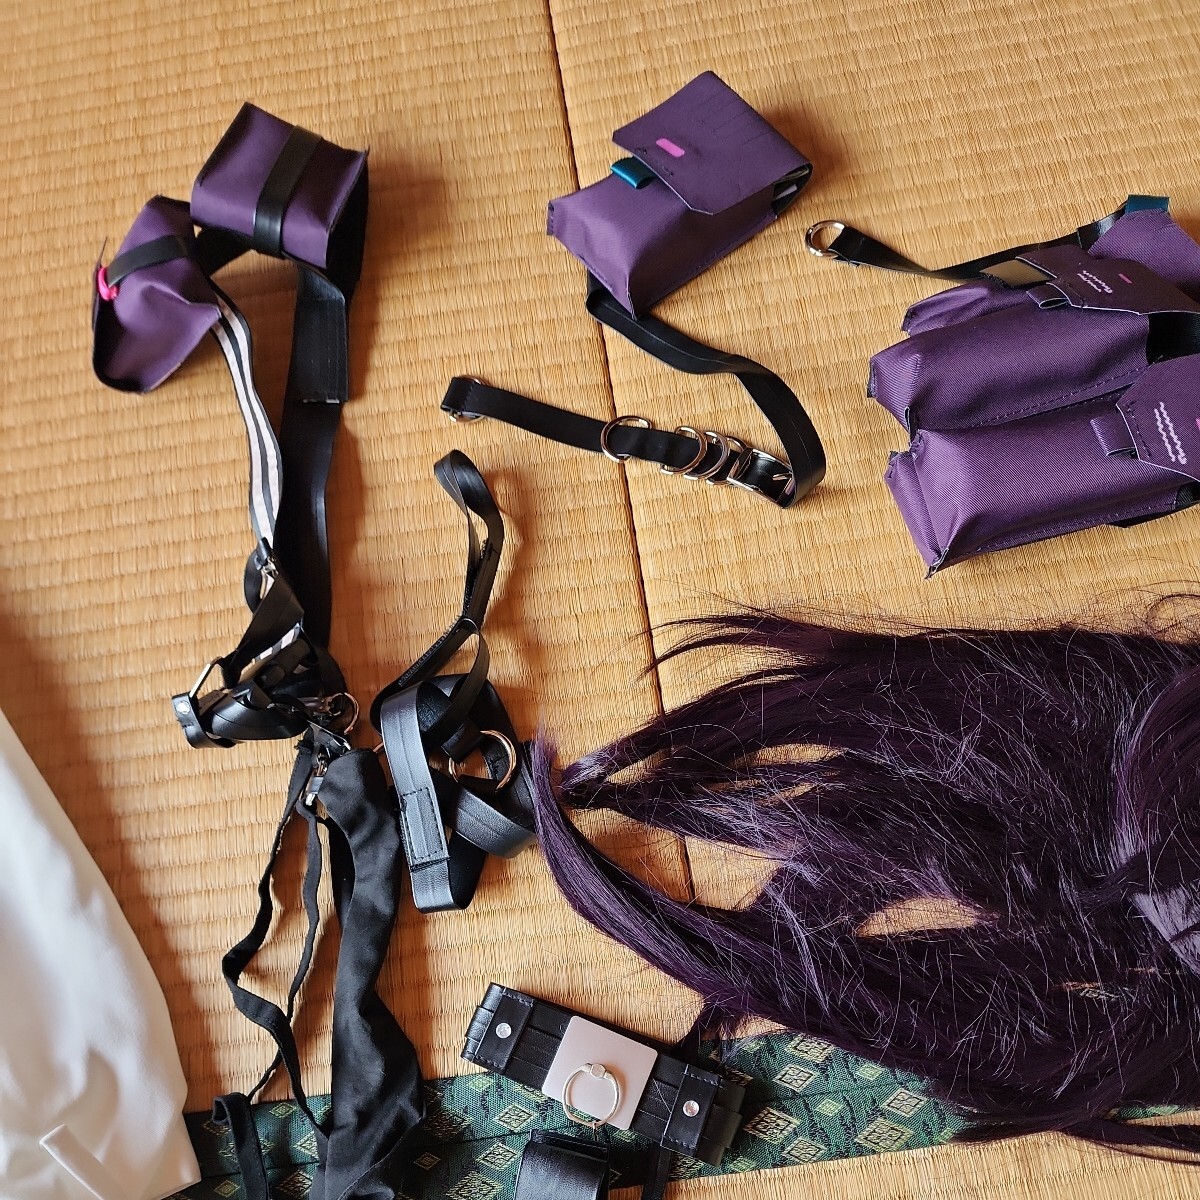 NIKKEmi - laM размер такой же и т.п. один иен старт костюмированная игра .. белый мягкость .. пальто . кожа детали аксессуары имеется чёрный фиолетовый длинный парик 